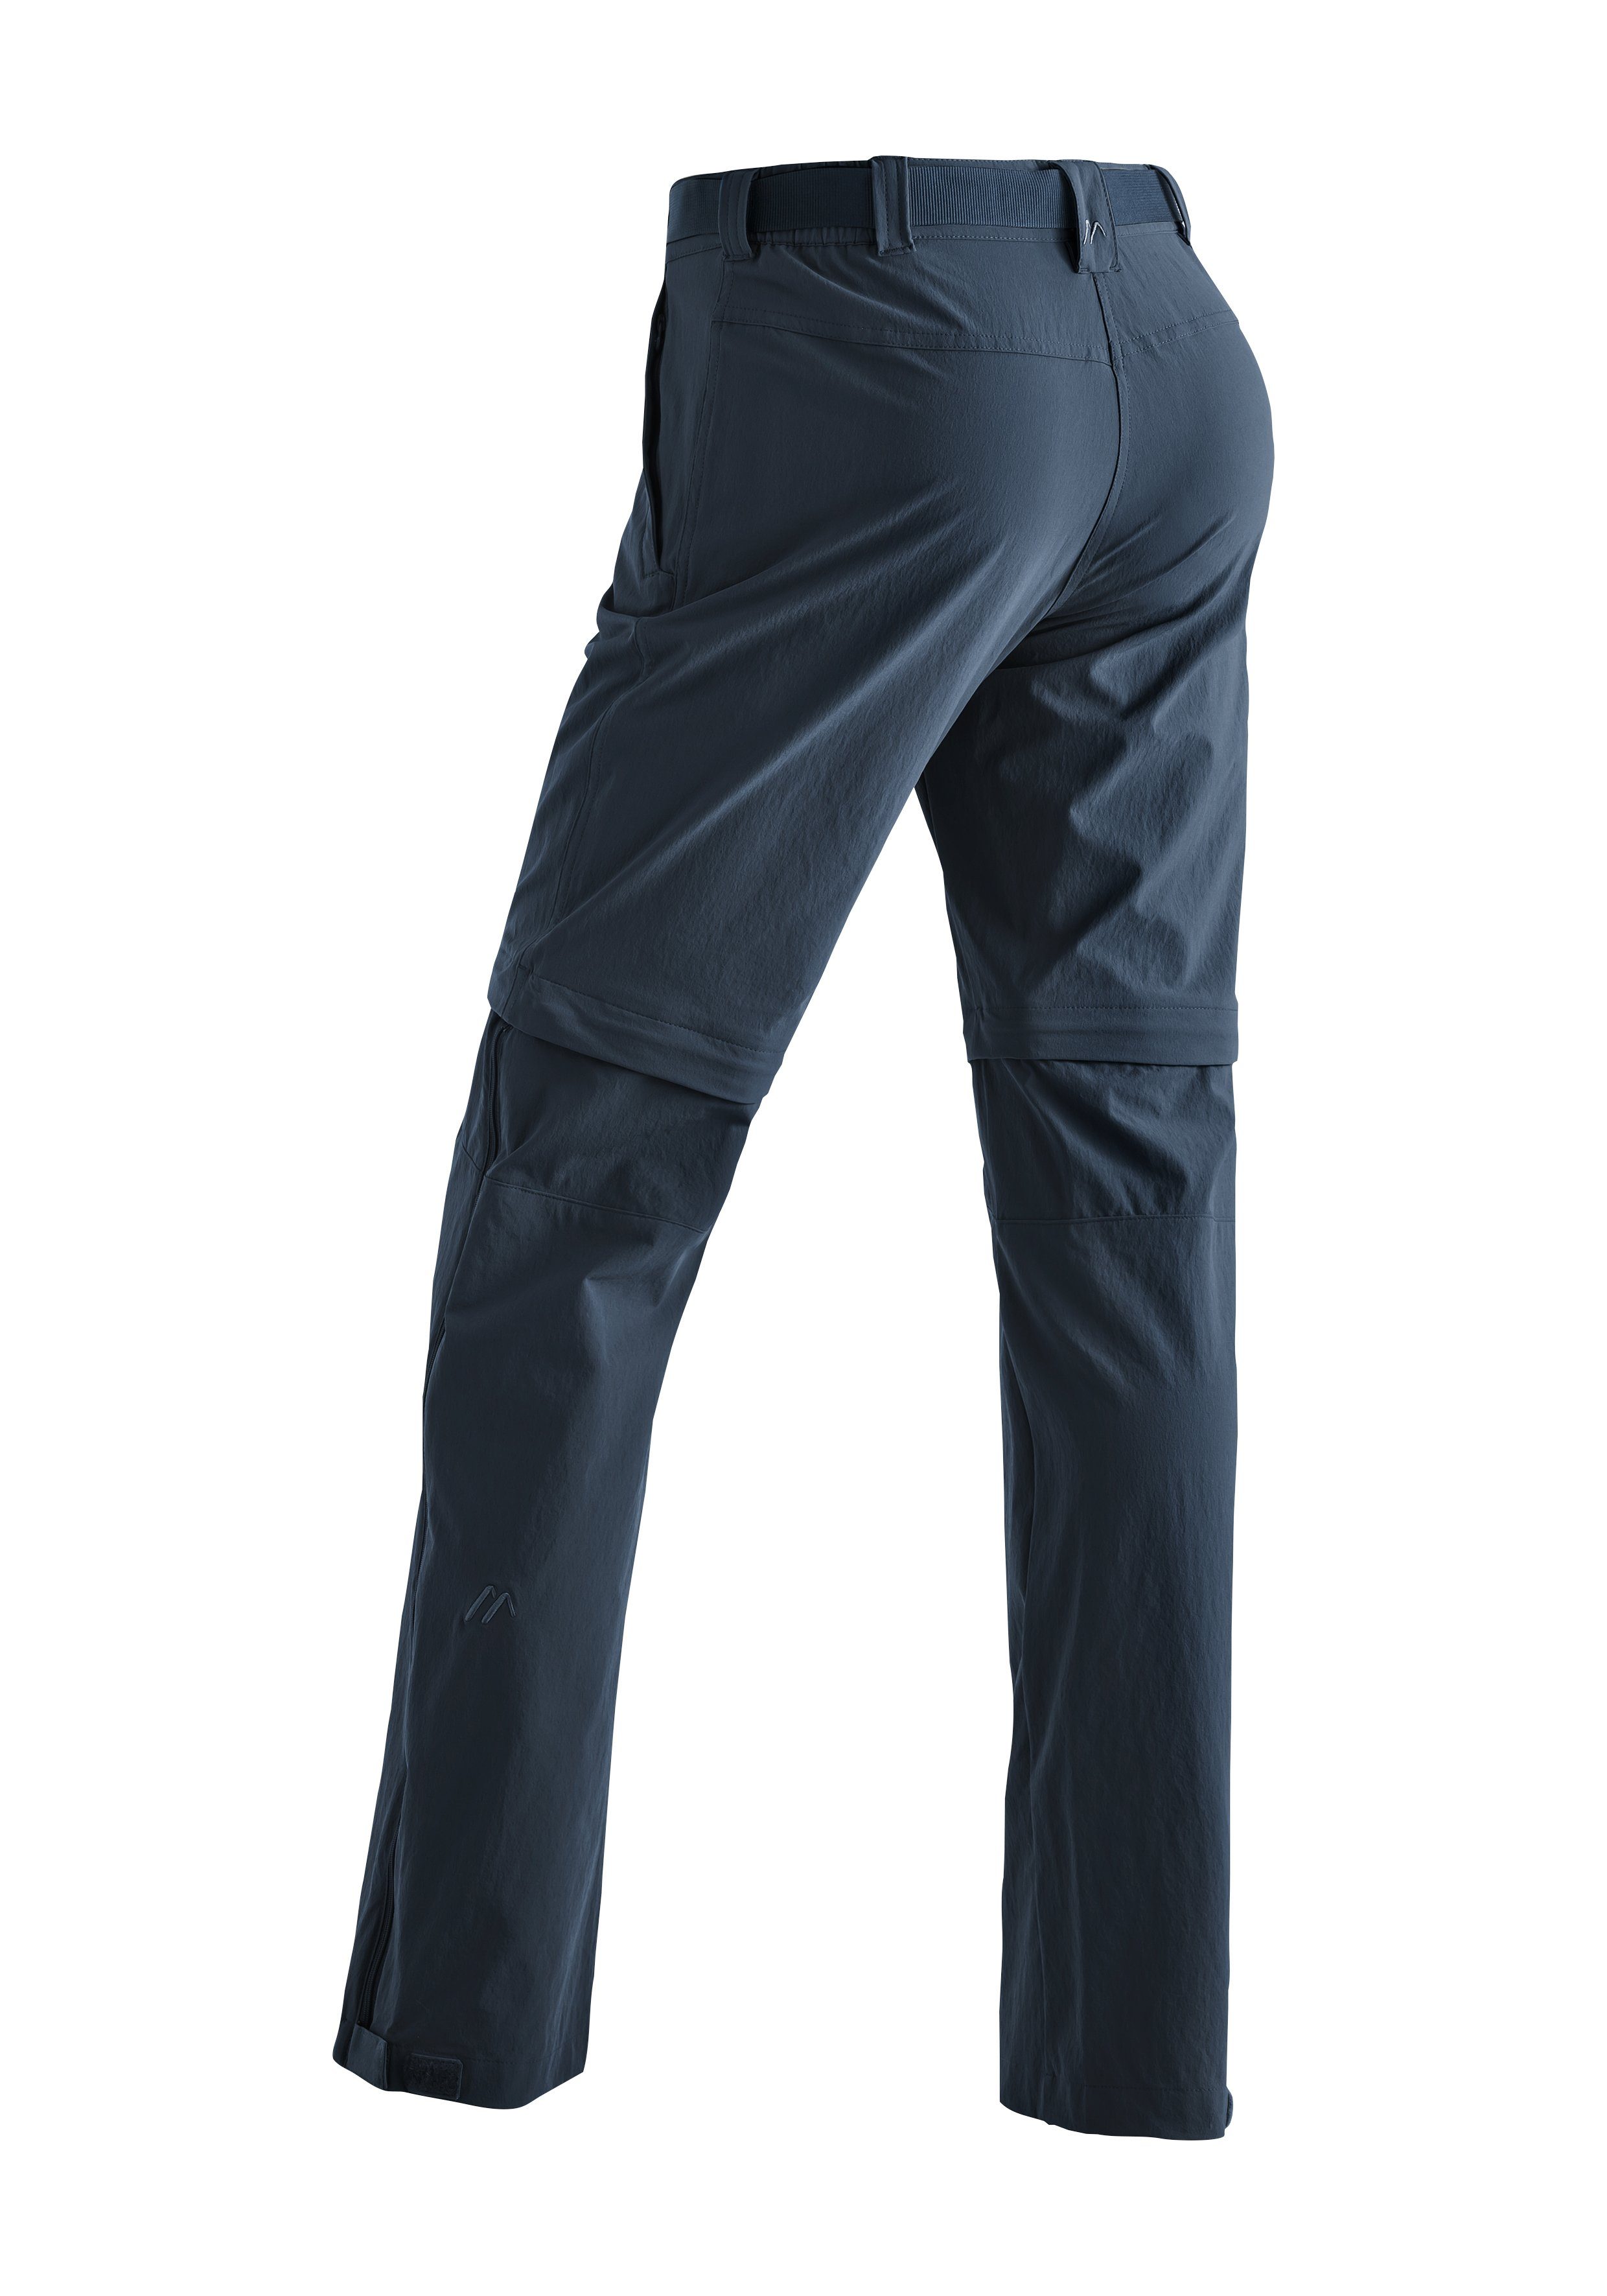 Maier Sports Funktionshose Outdoor-Hose jeansblau atmungsaktive Damen zipp-off Nata Wanderhose